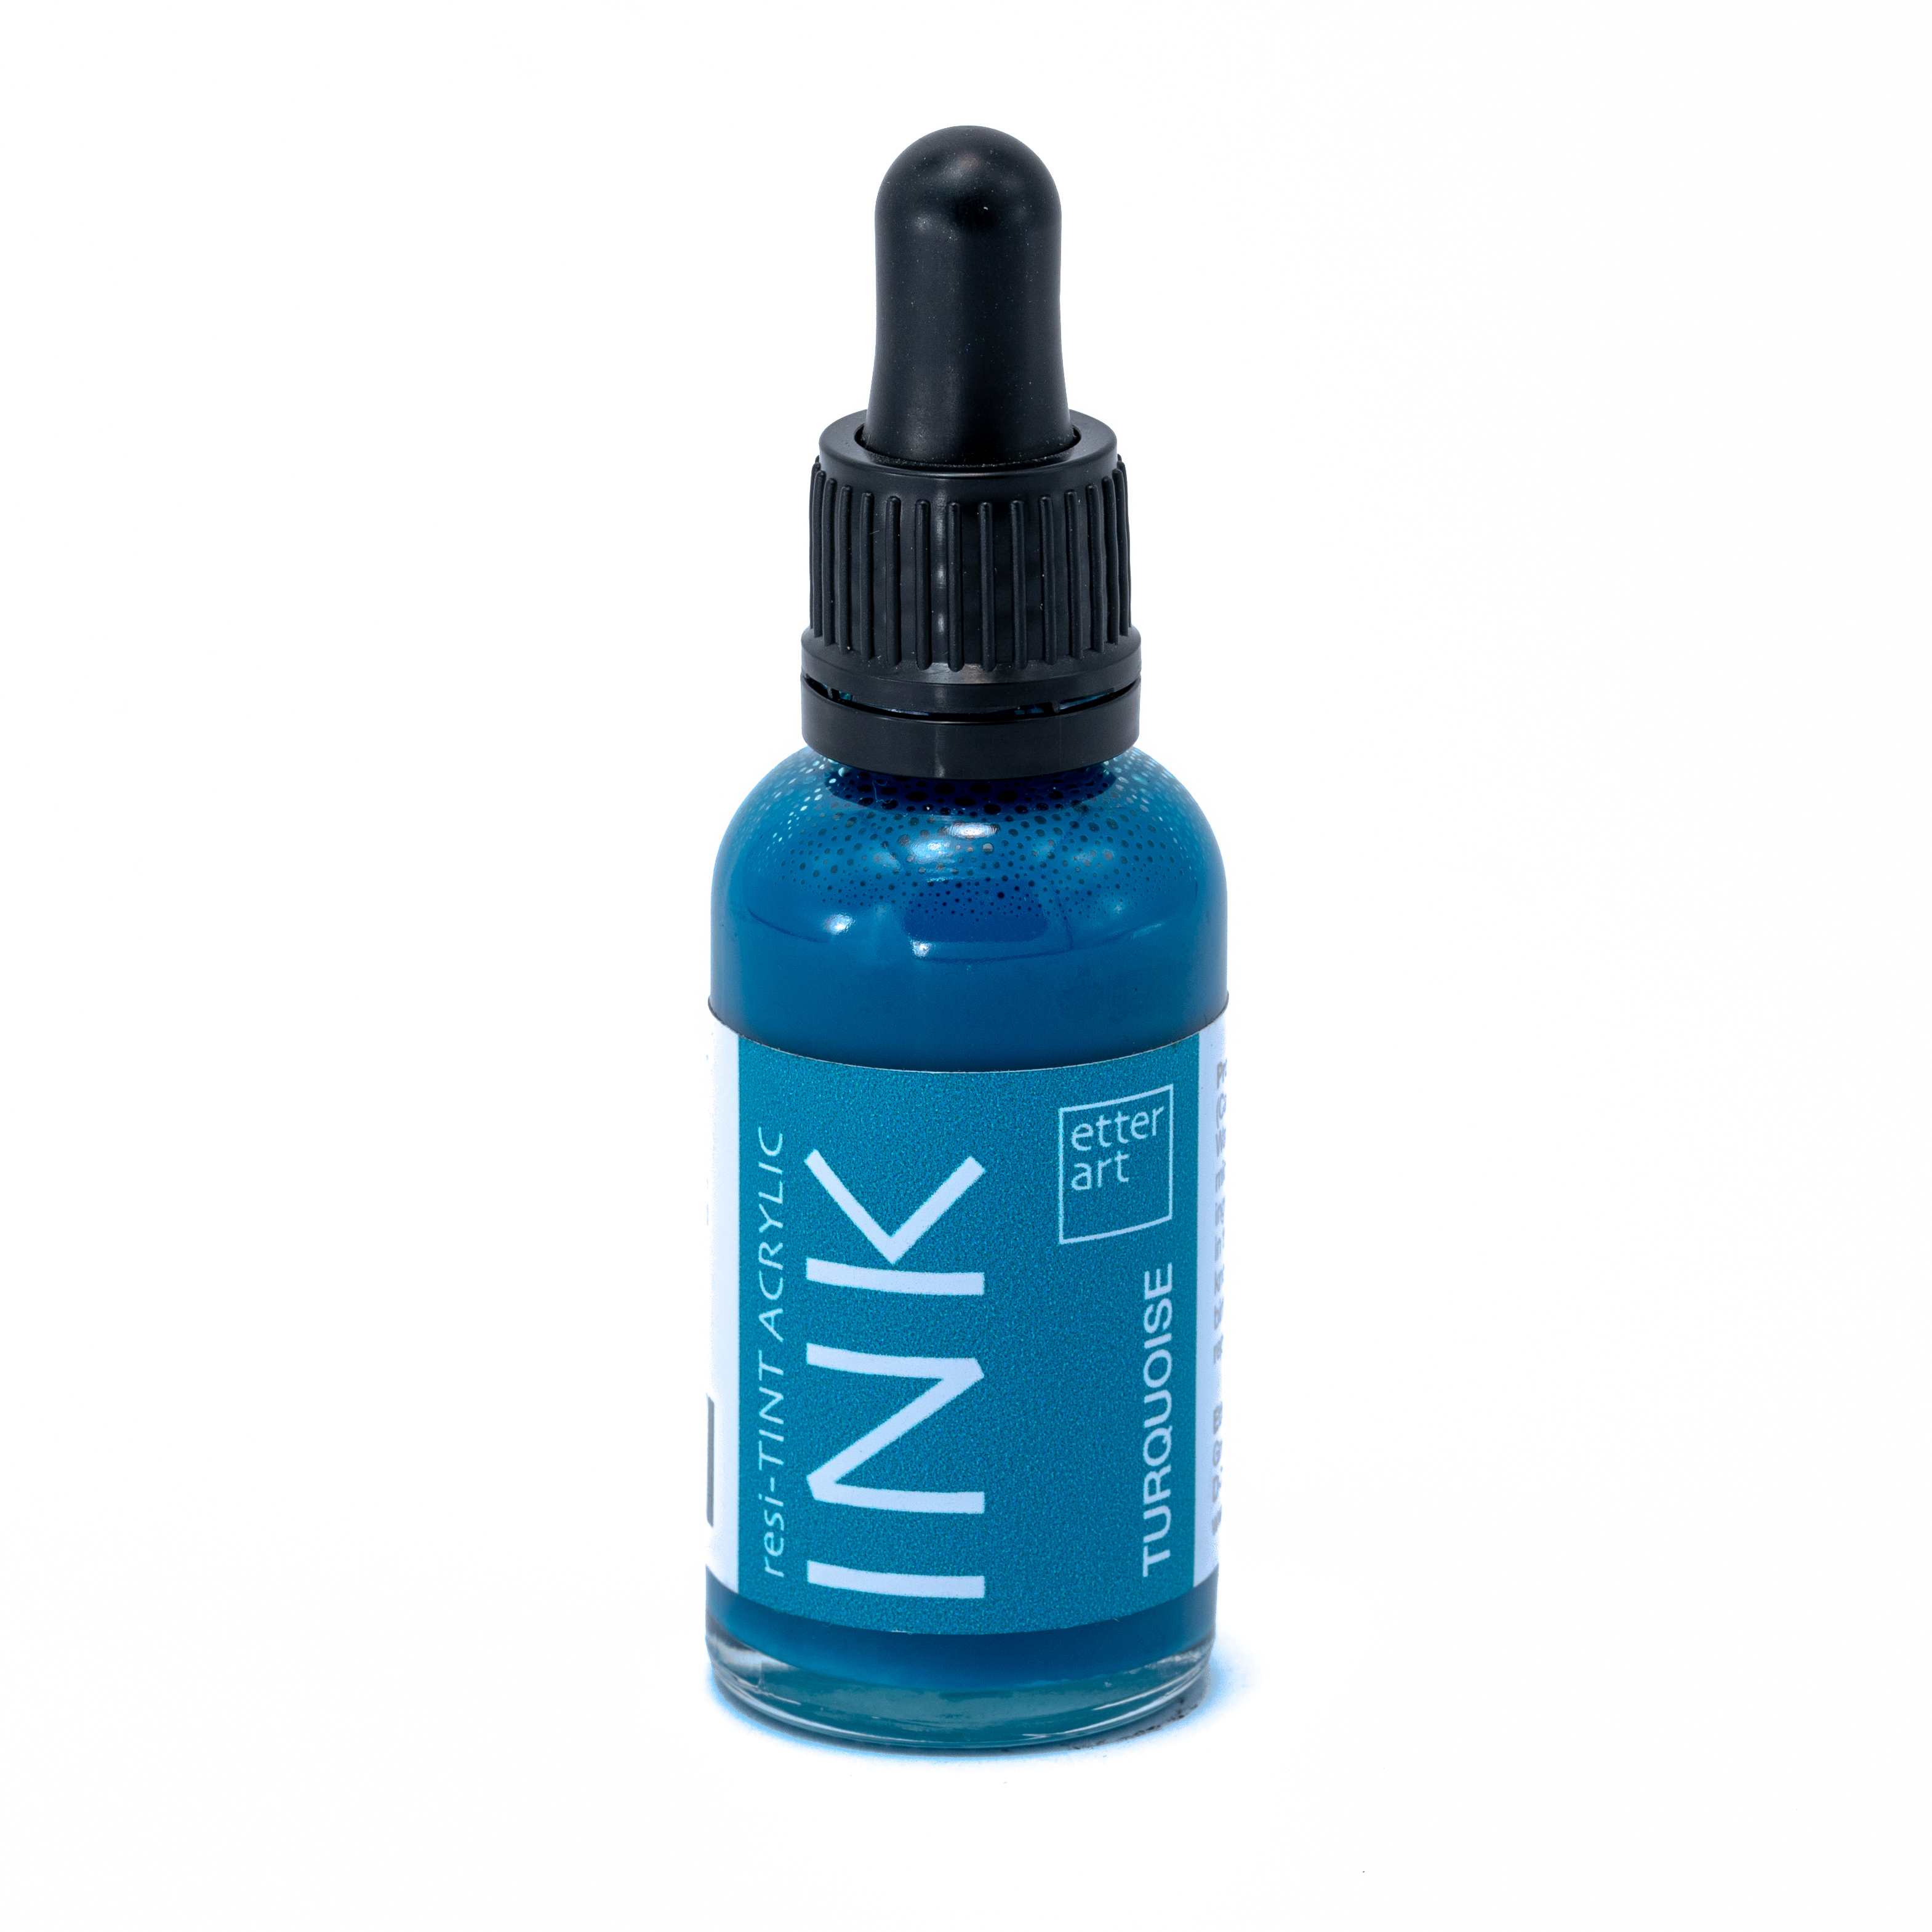 resi-TINT Acryltinte Turquoise 29 ml